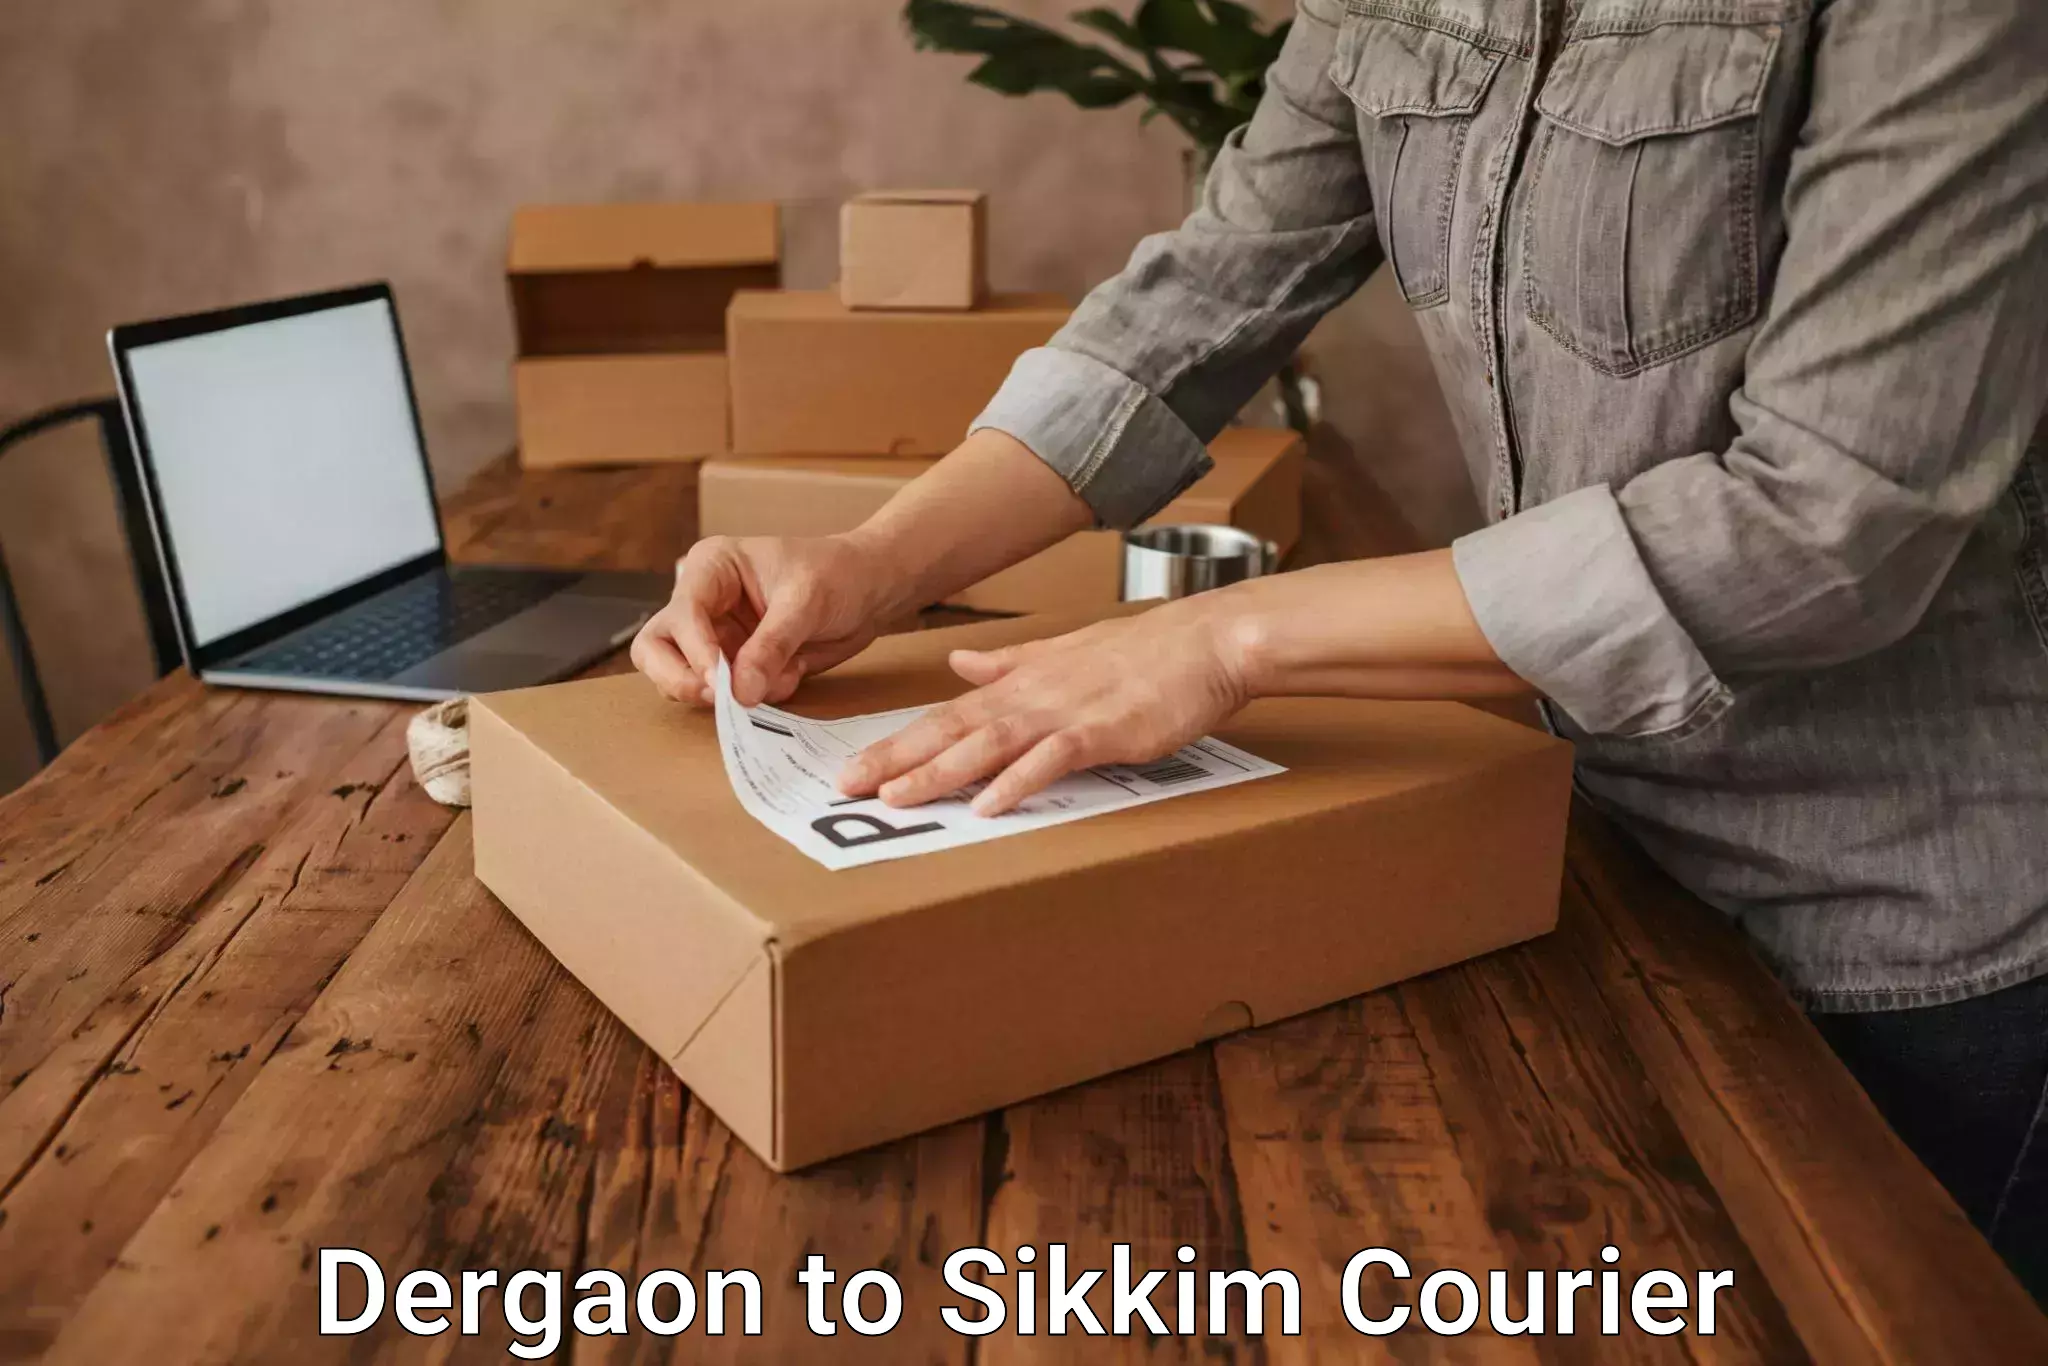 User-friendly courier app Dergaon to Sikkim